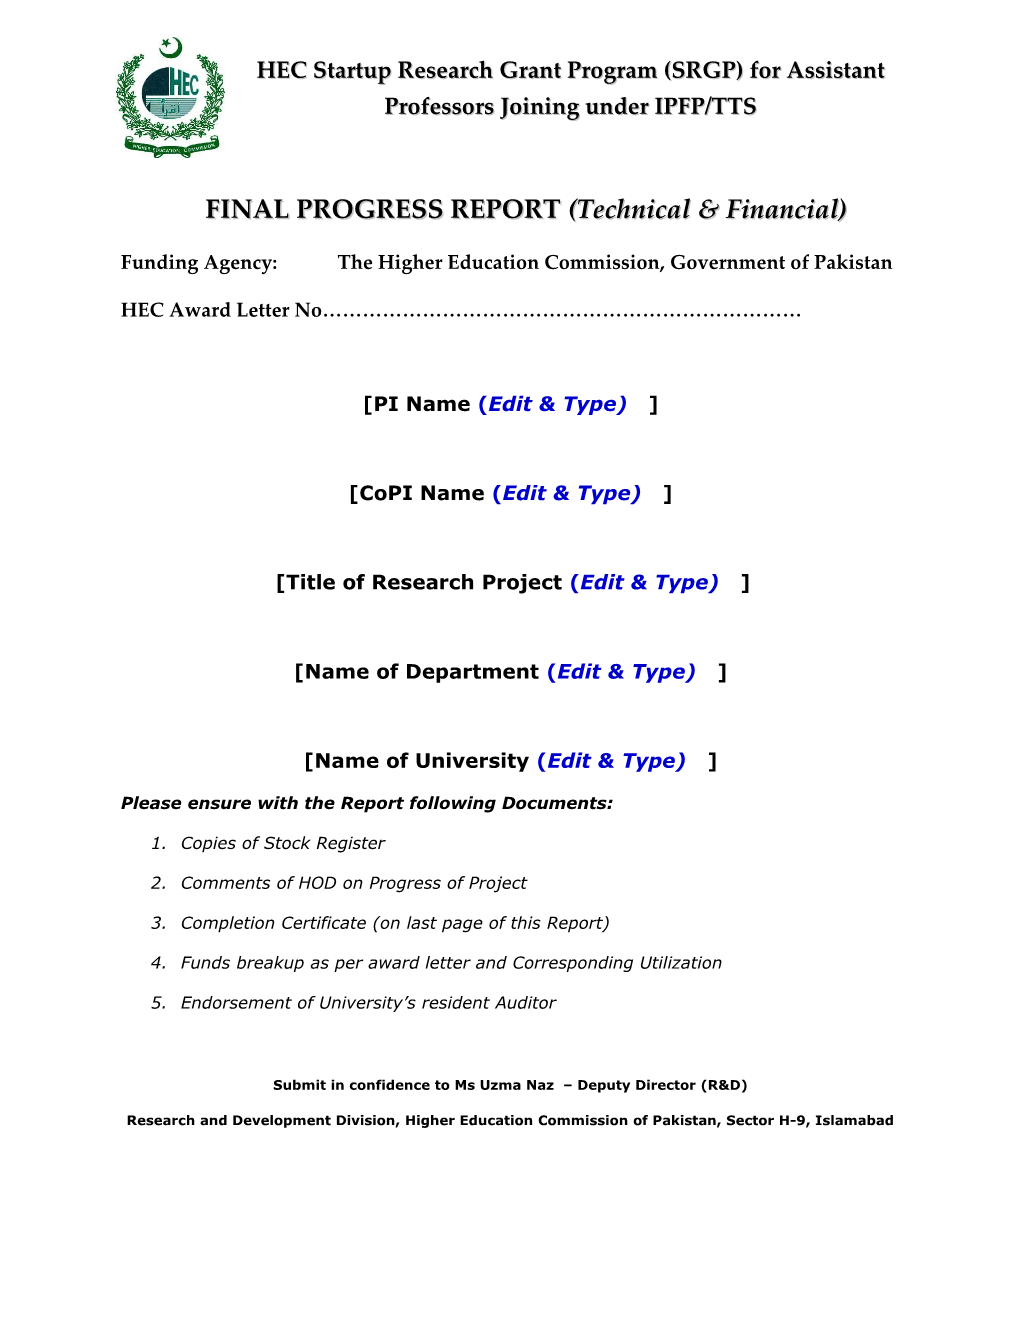 FINAL PROGRESS REPORT (Technical & Financial)